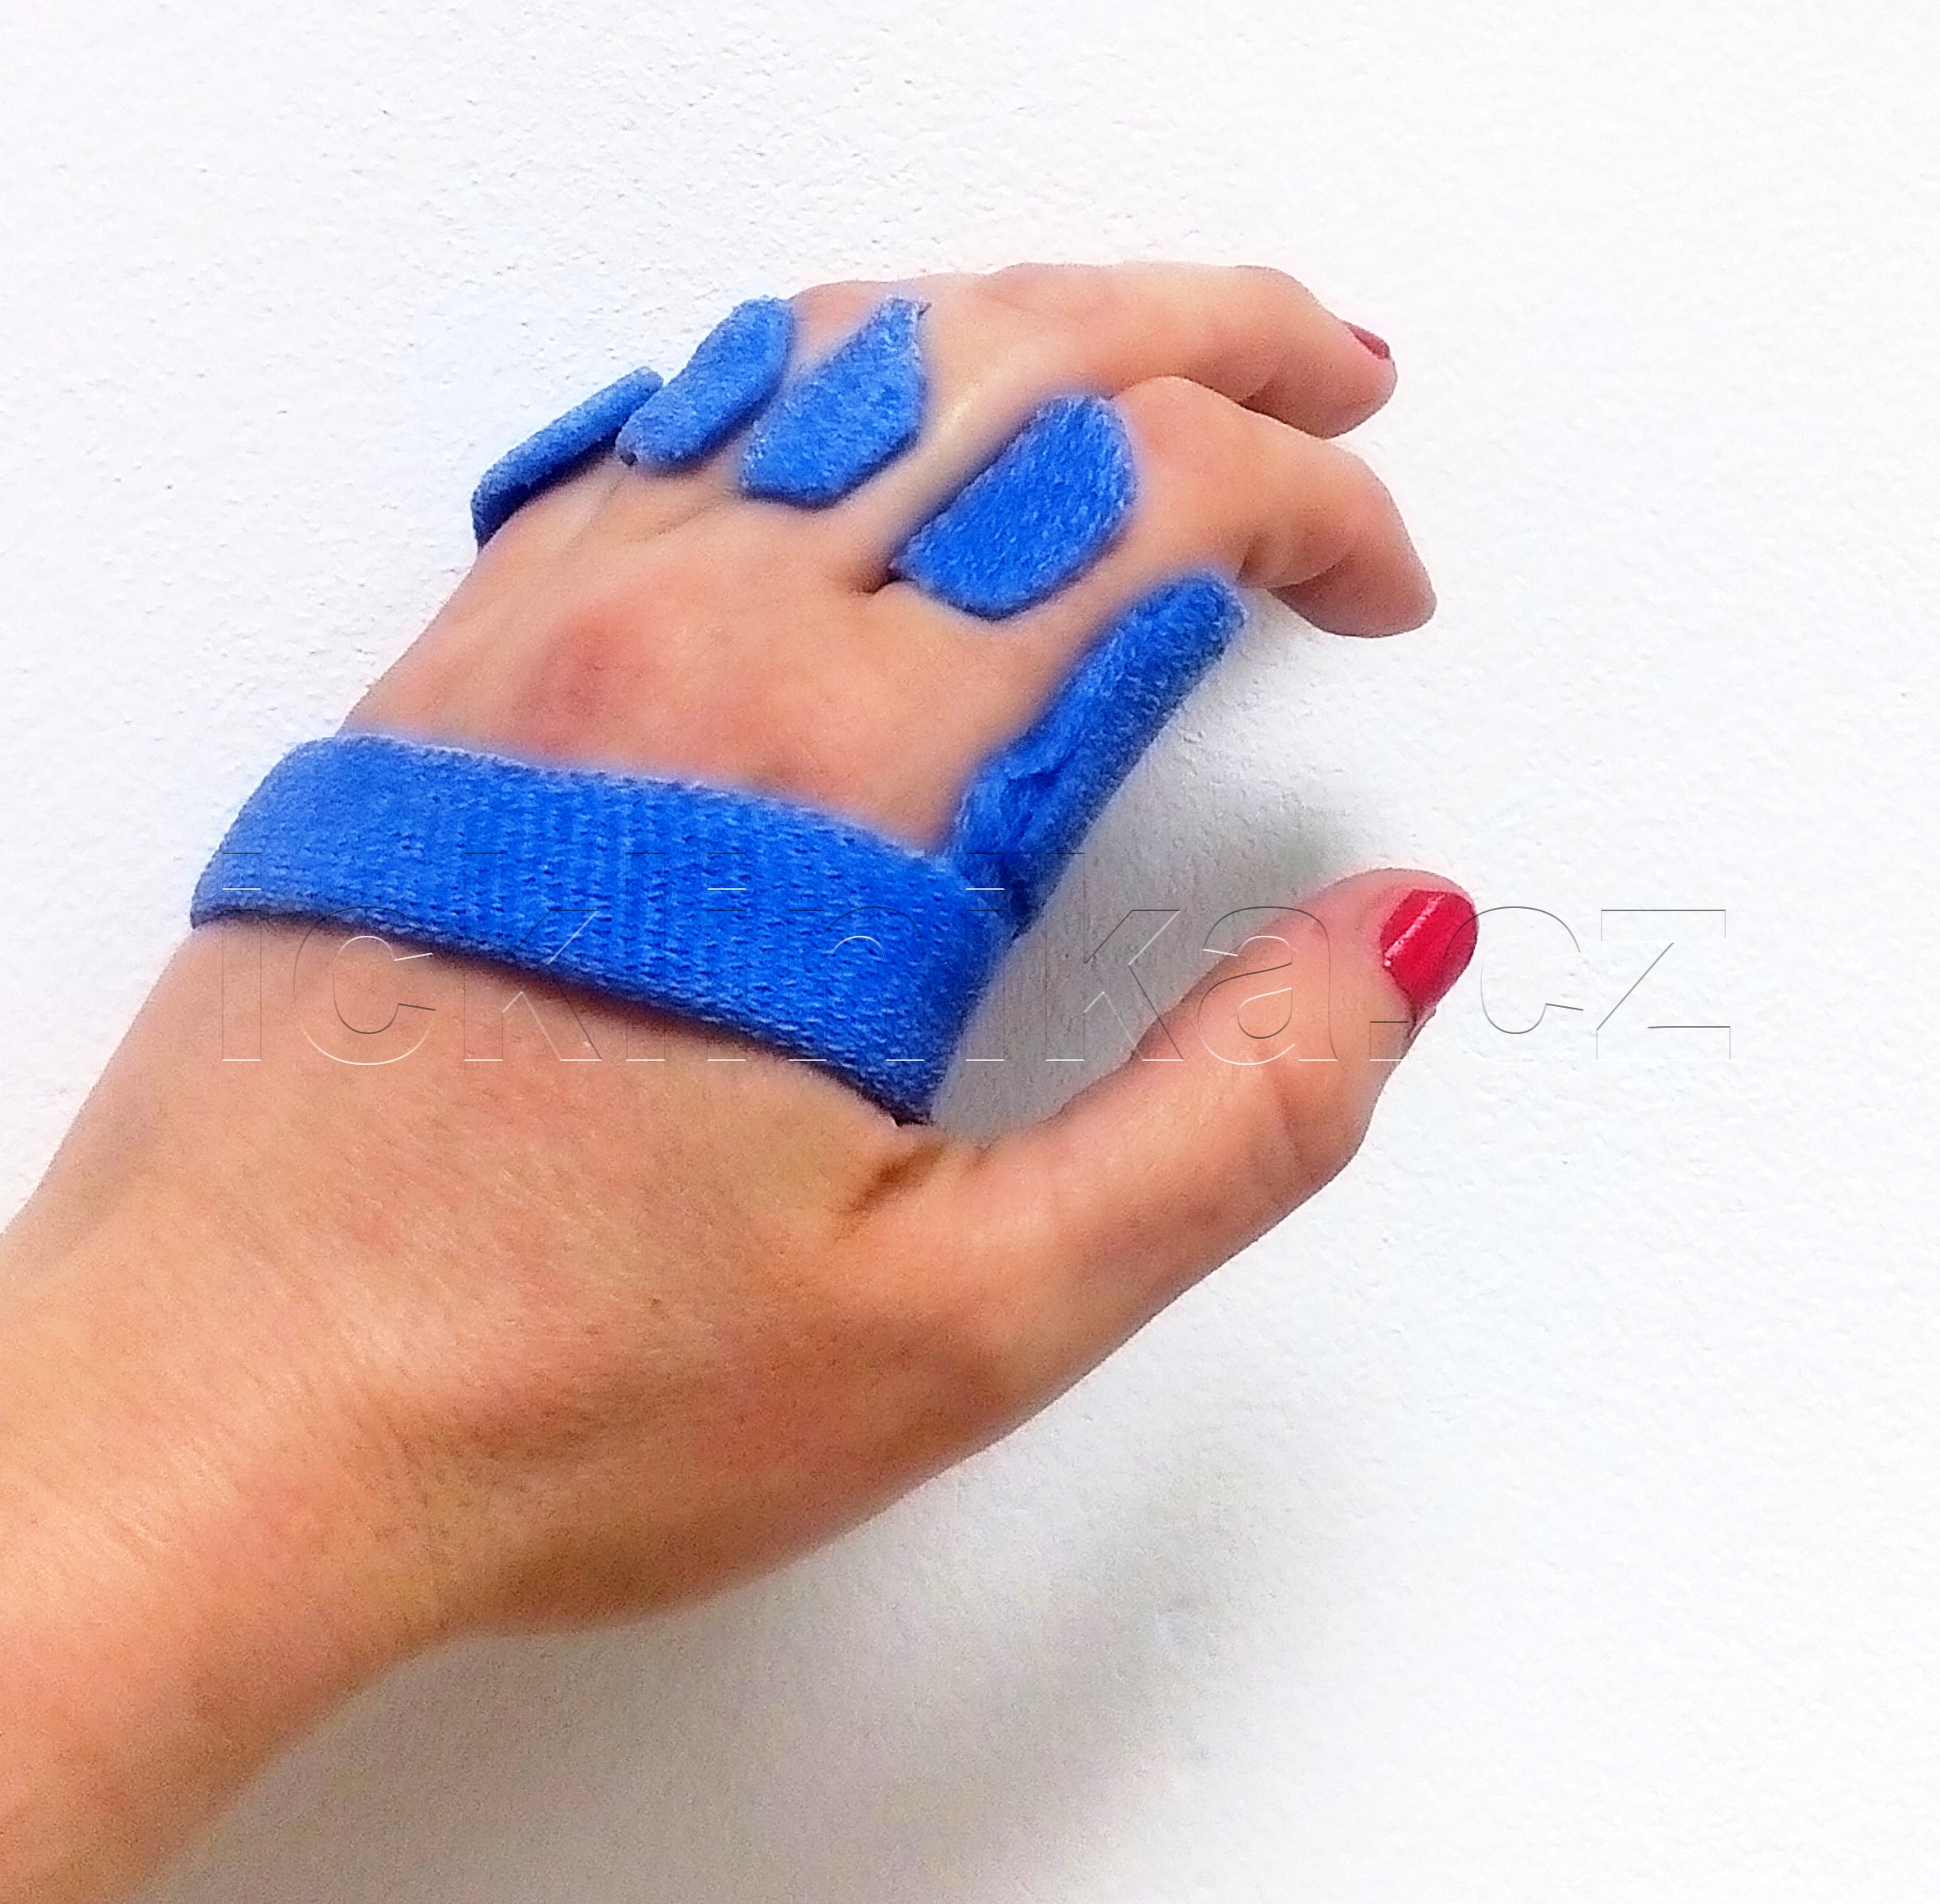 Rehabilitace ruky-revmatoidní artritida6